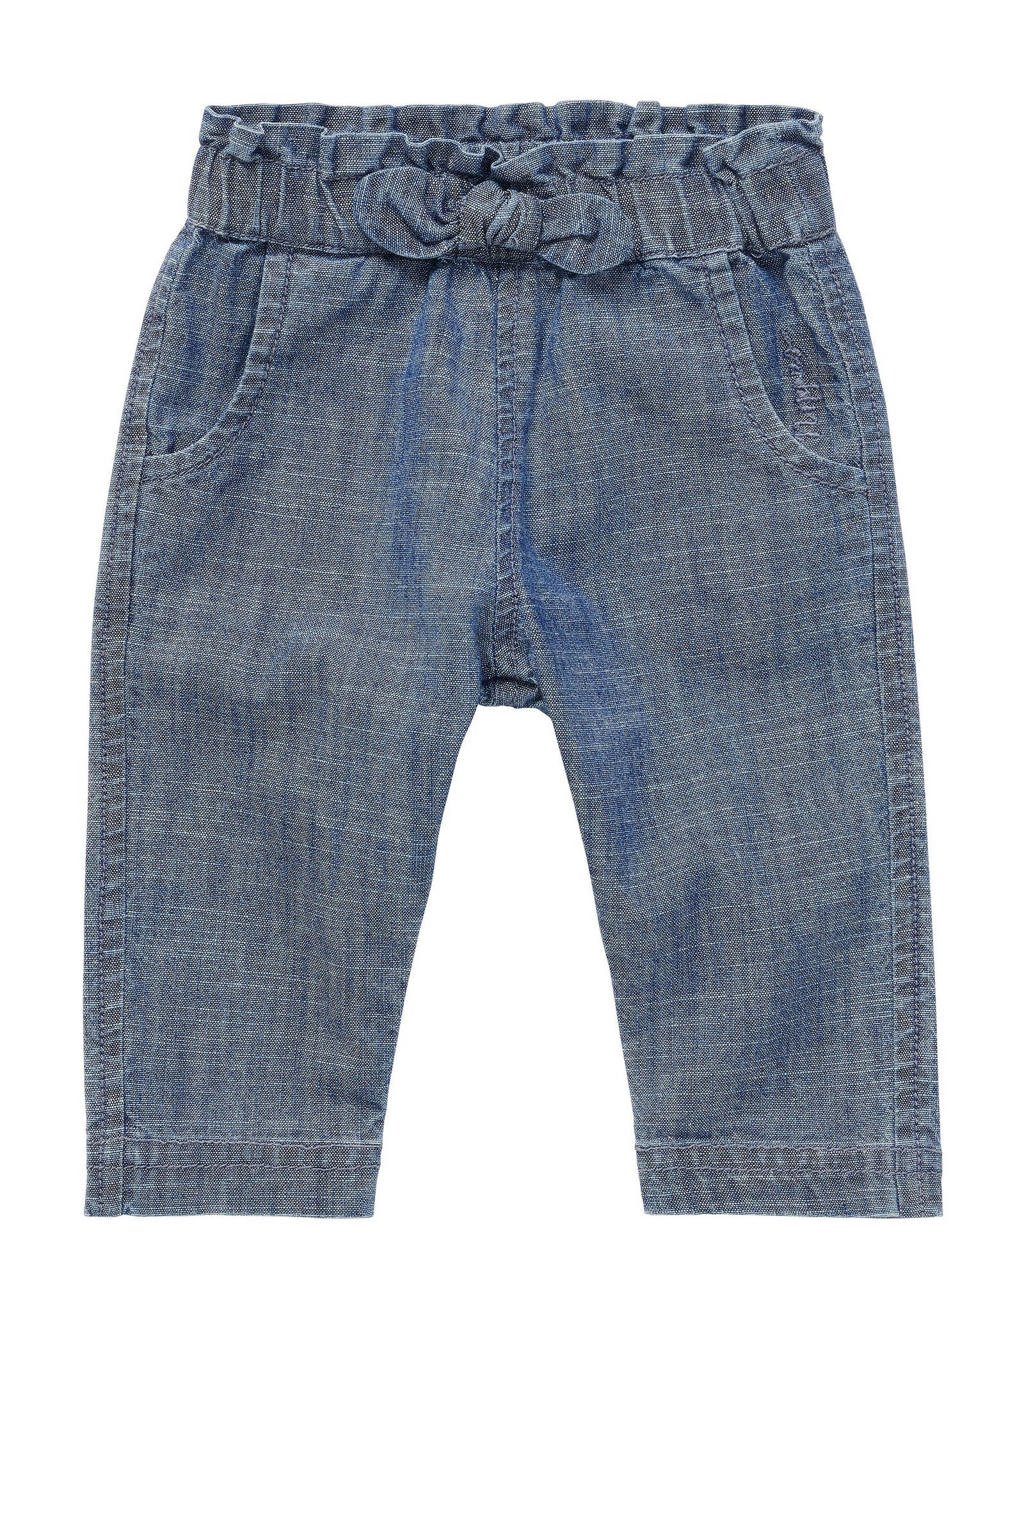 Blauwe meisjes Noppies baby loose fit jeans van katoen met regular waist en elastische tailleband met koord